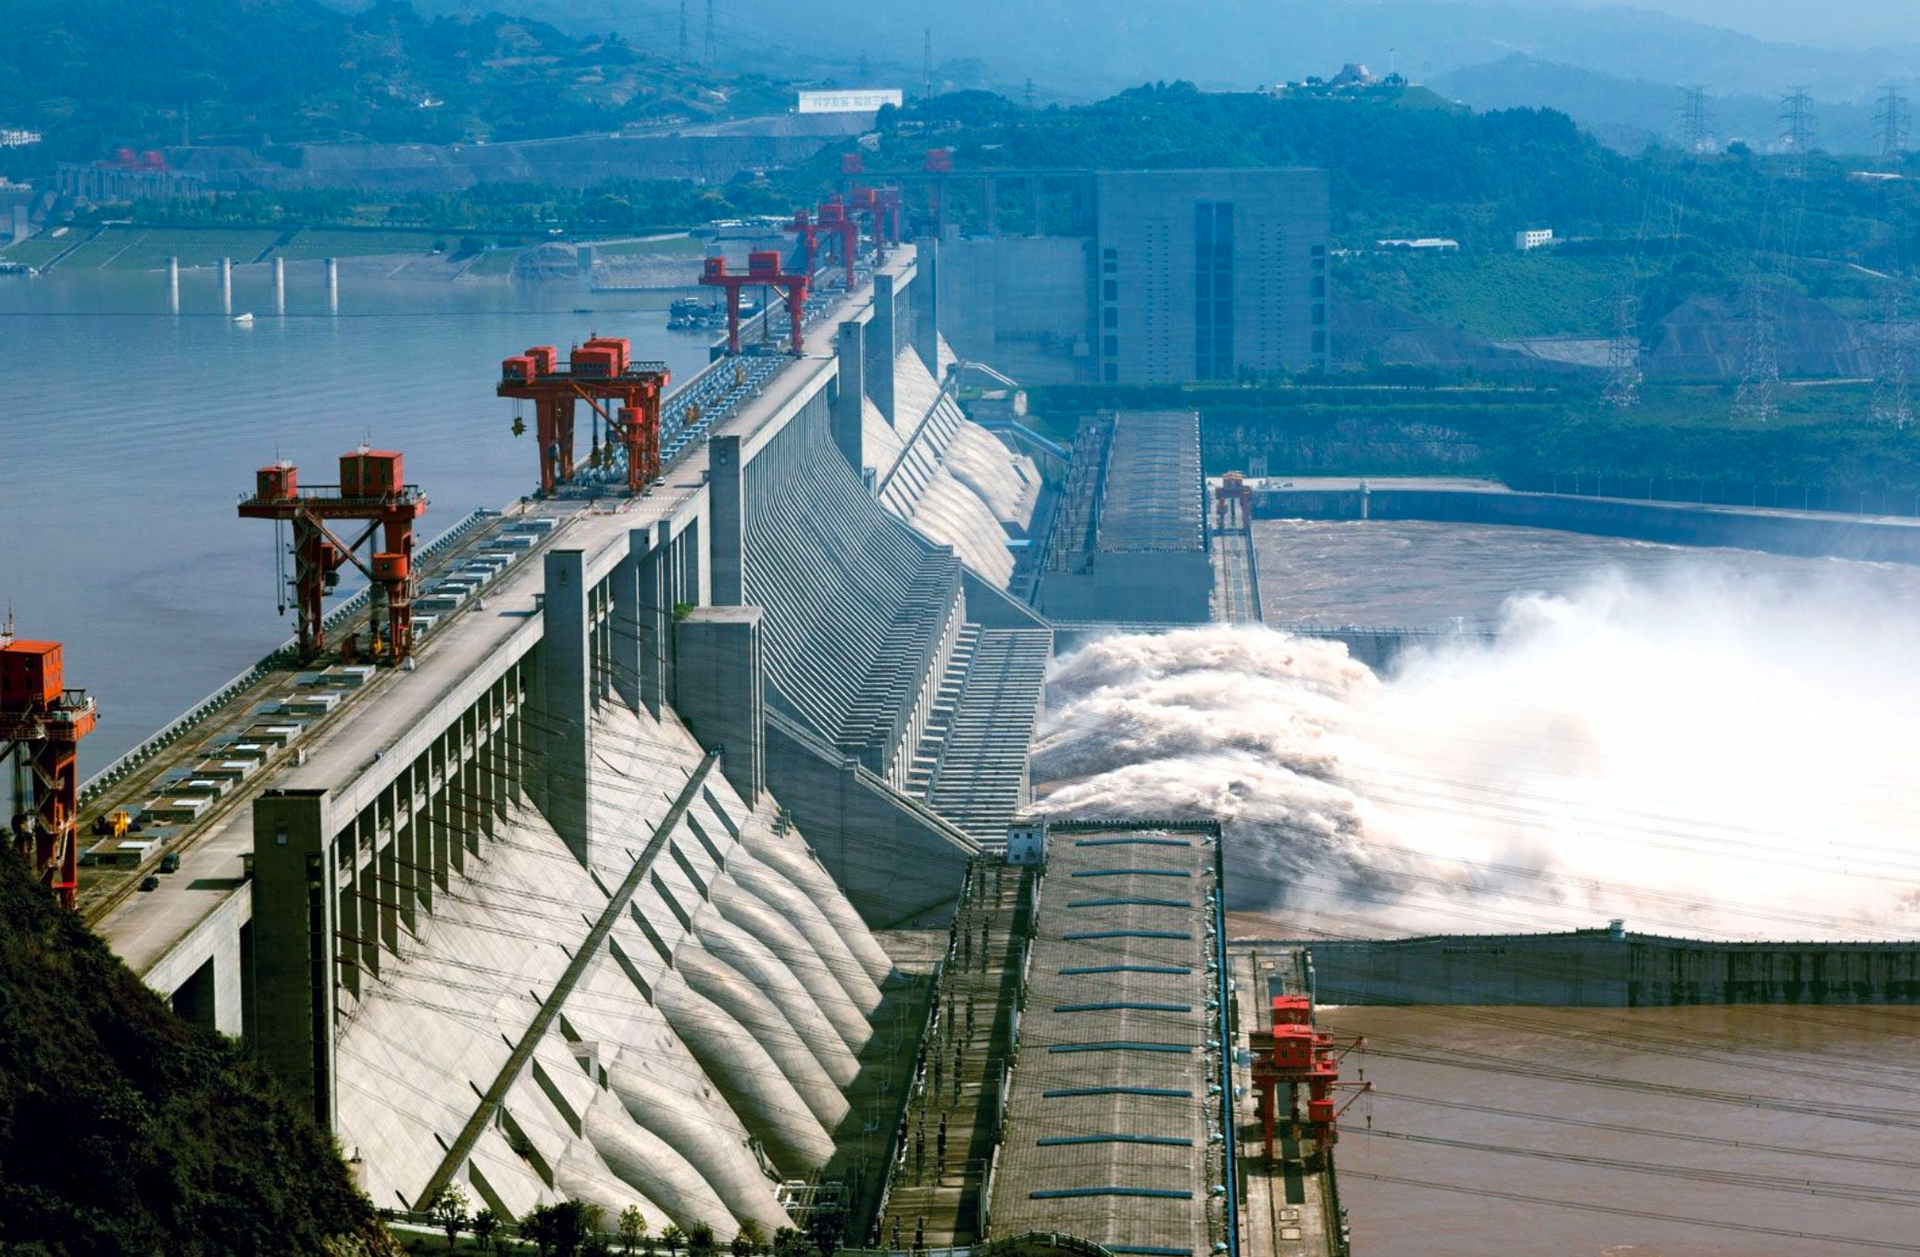 Quốc gia cạnh Việt Nam sở hữu nguồn thuỷ điện lớn nhất thế giới chưa được khai thác: Đủ nguồn cung cho hơn 400.000 hộ, chuẩn bị xây con đập lớn nhất thế giới - Ảnh 2.